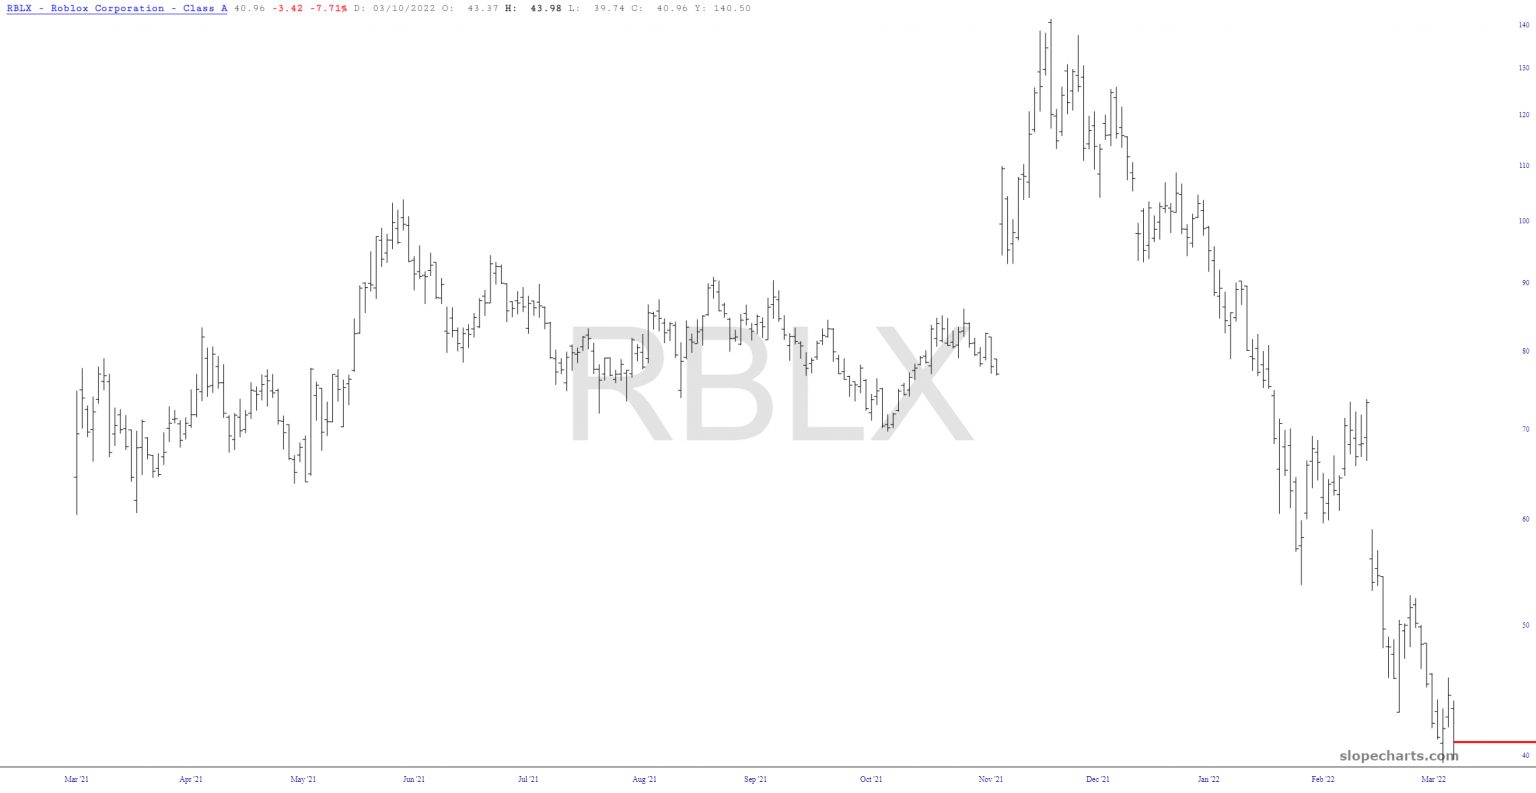 Long-Term RBLX Chart.